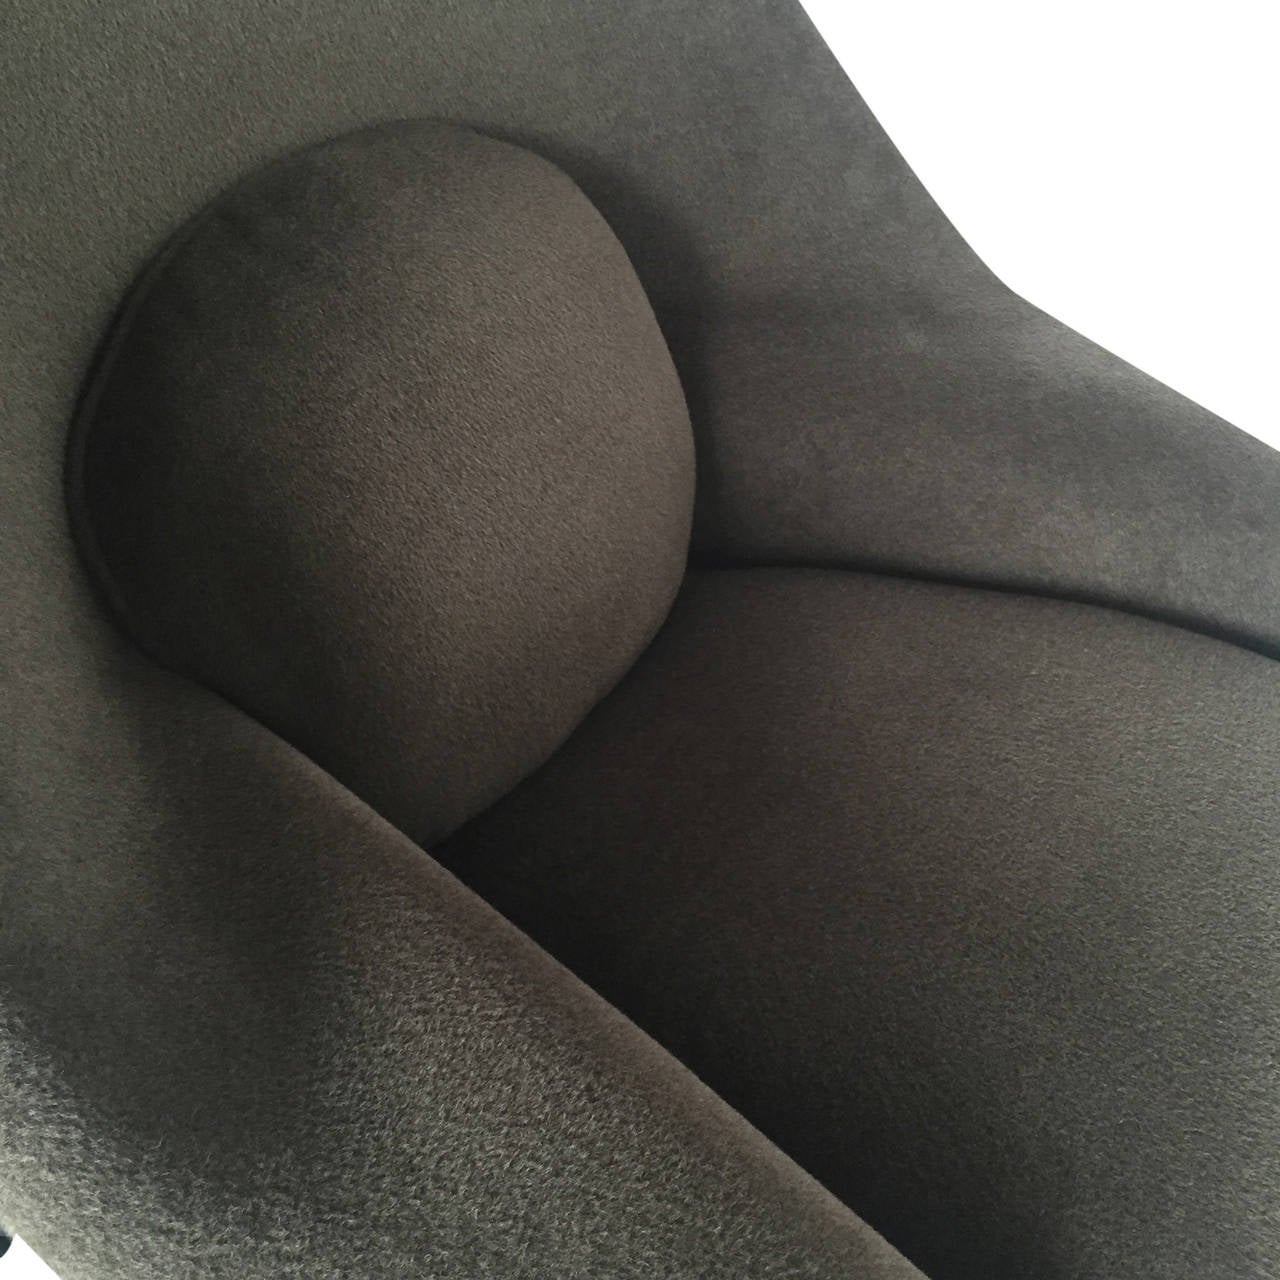 Loro Piana Alpaca Wool 'Womb' Chair by Eero Saarinen for Knoll Associates 1